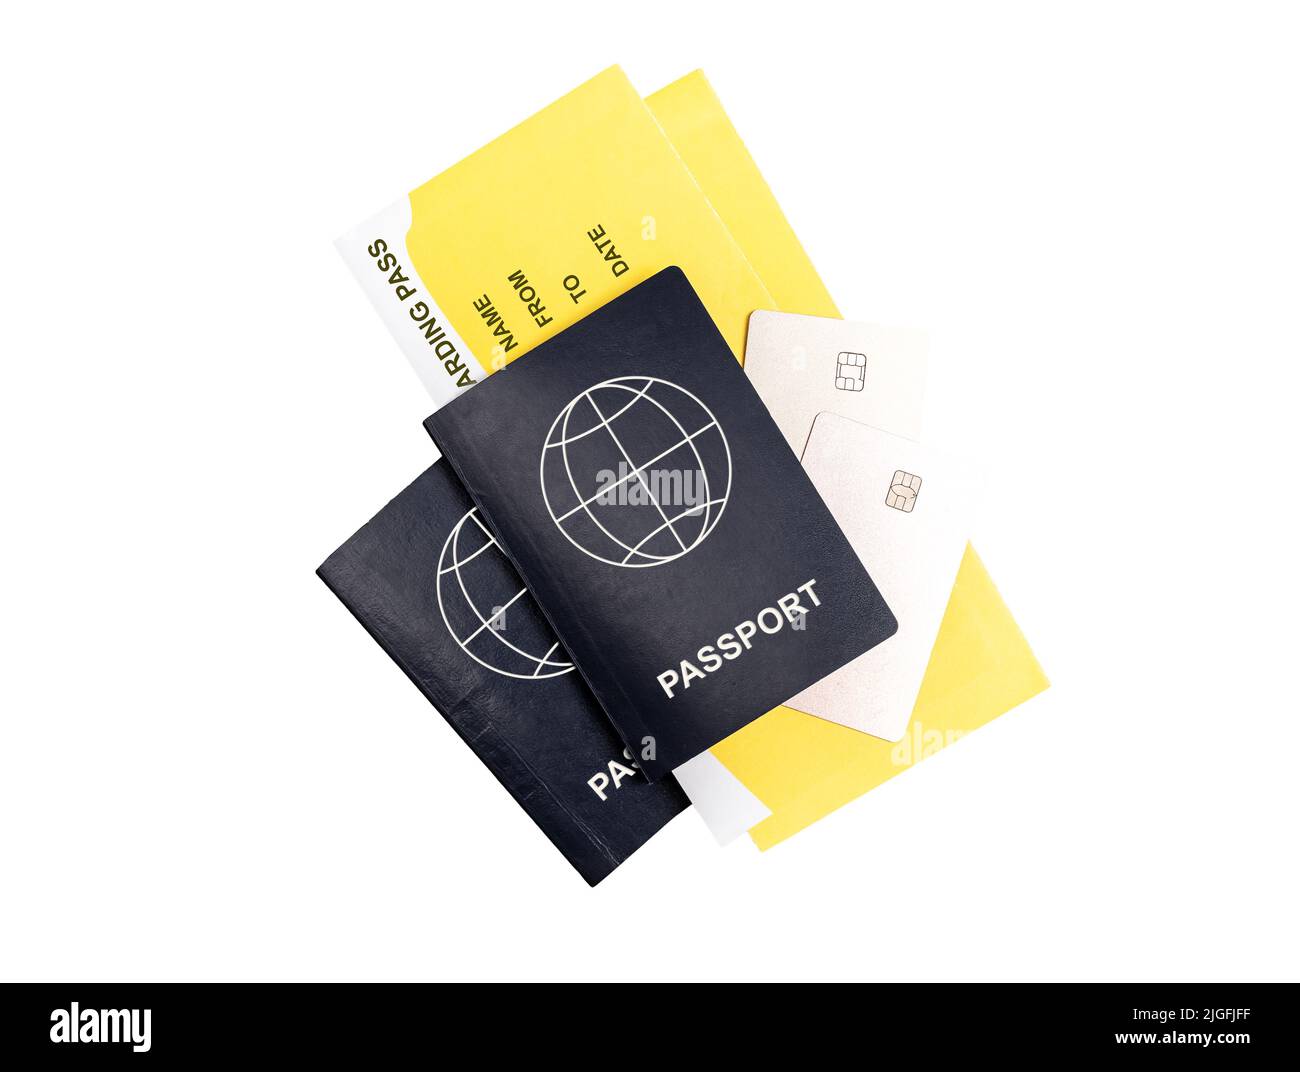 Zwei Pässe, Bordkarten und Kreditkarten auf weißem Hintergrund isoliert. Flug mit dem Paar oder mit der Familie. Tourismuskonzept. Hochwertige Fotos Stockfoto